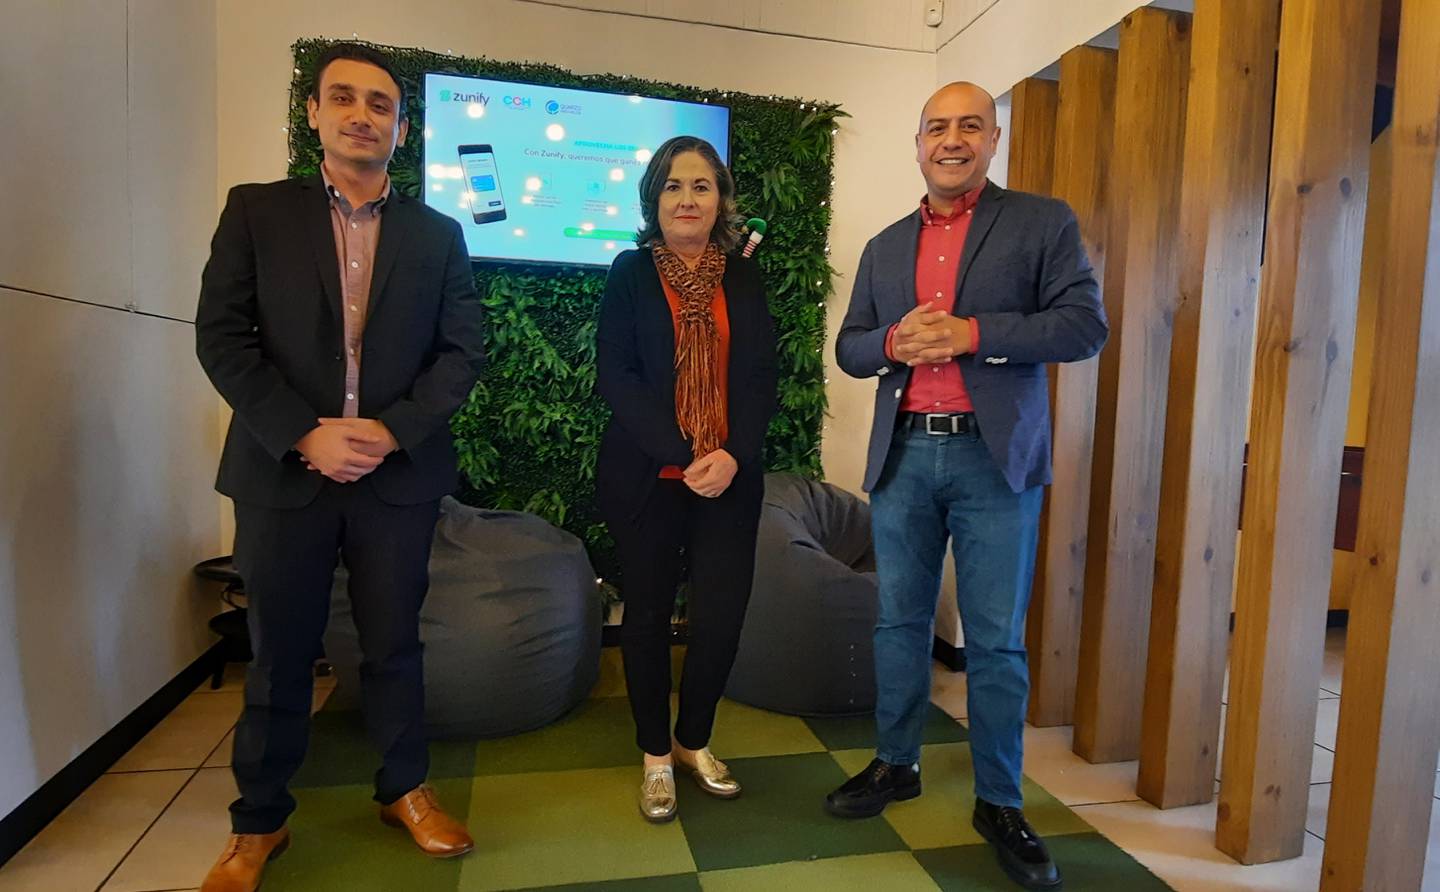 Juan Monge, CEO de Zunify (izquierda), Flora Ayub, directora ejecutiva de la Cámara Costarricense de Hoteles, y Marco Escamilla, gerente general de Quarzo Innovación, anunciaron el convenio para pagos electrónicos. Foto: Cortesía